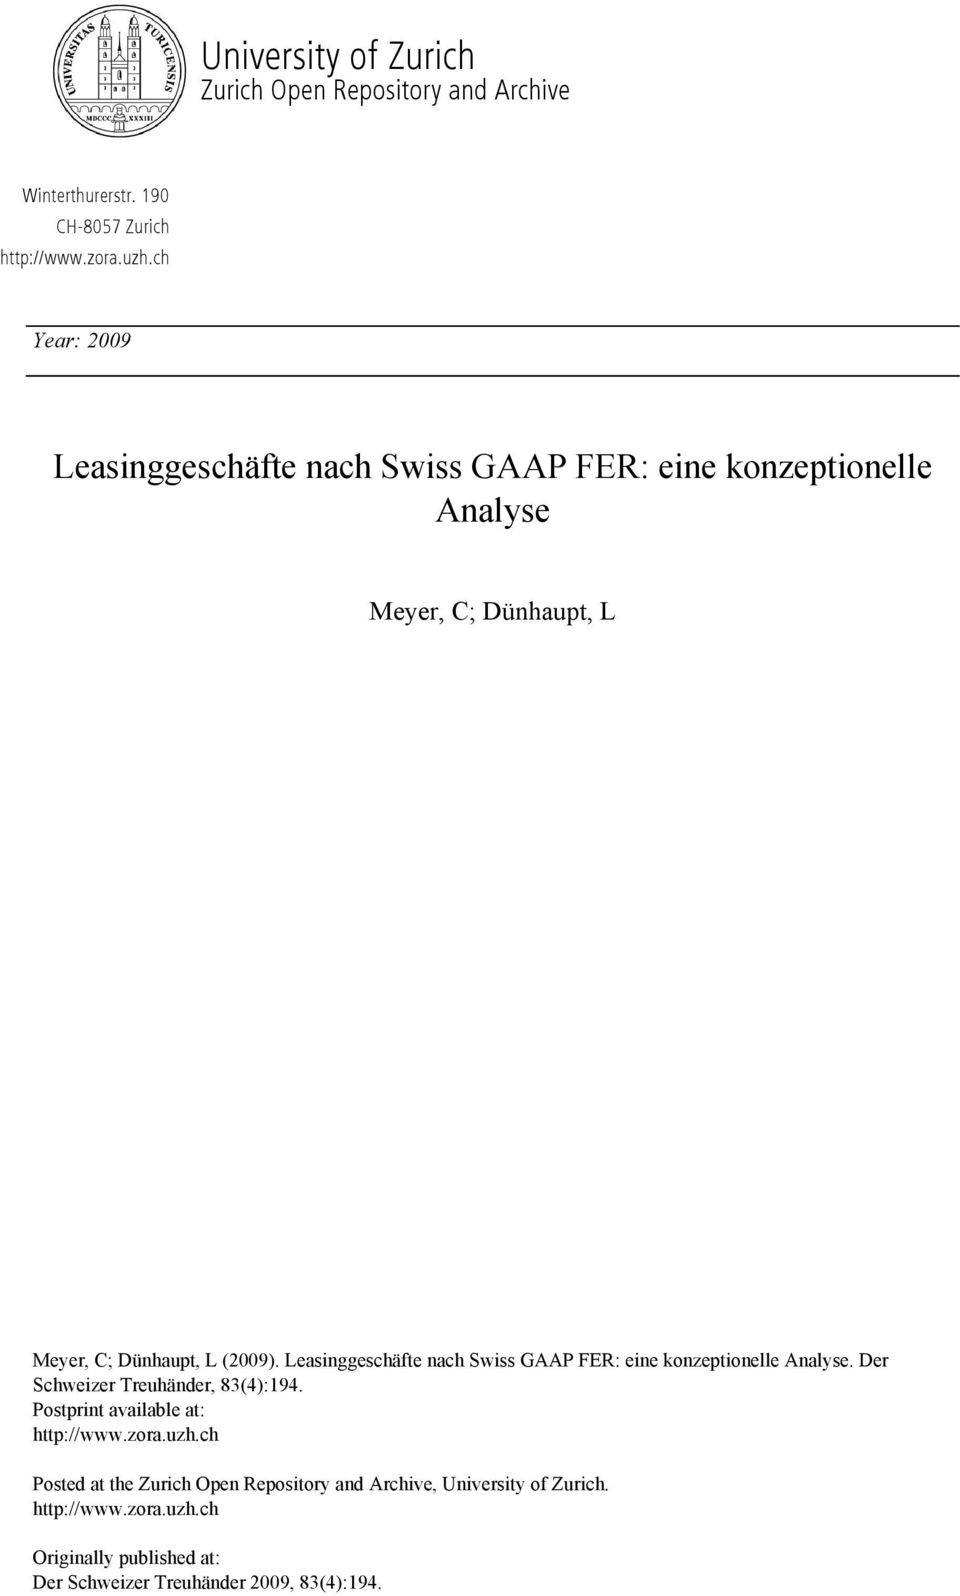 Leasinggeschäfte nach Swiss GAAP FER: eine konzeptionelle Analyse. Der Schweizer Treuhänder, 83(4):194. Postprint available at: http://www.